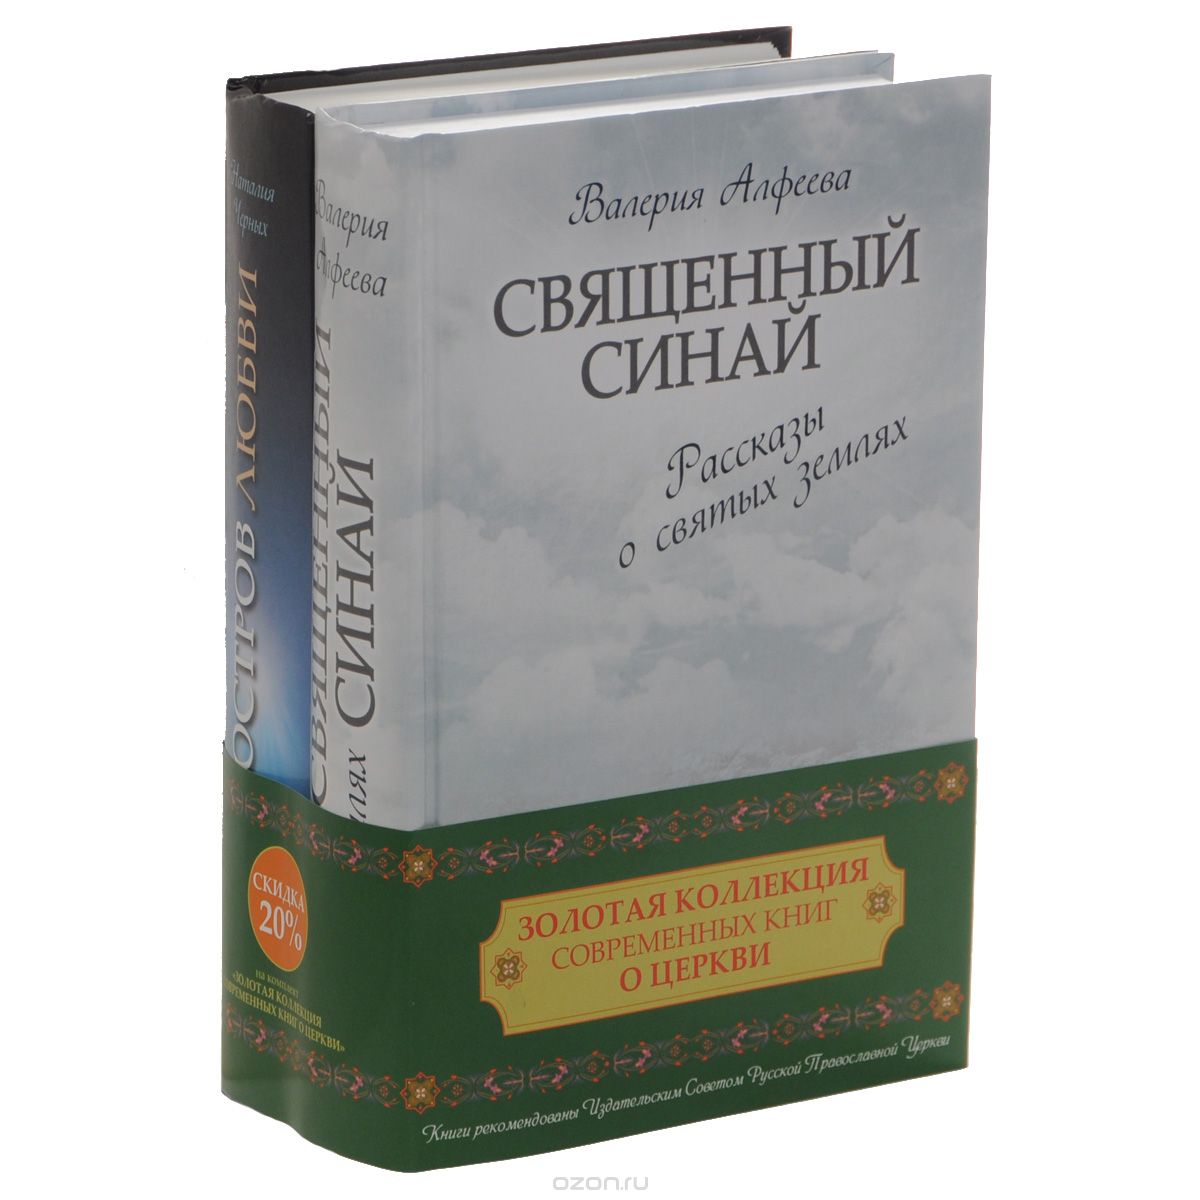 Скачать книгу "Золотая коллекция современных книг о церкви (комплект из 2 книг), Валерия Алфеева, Наталия Черных"